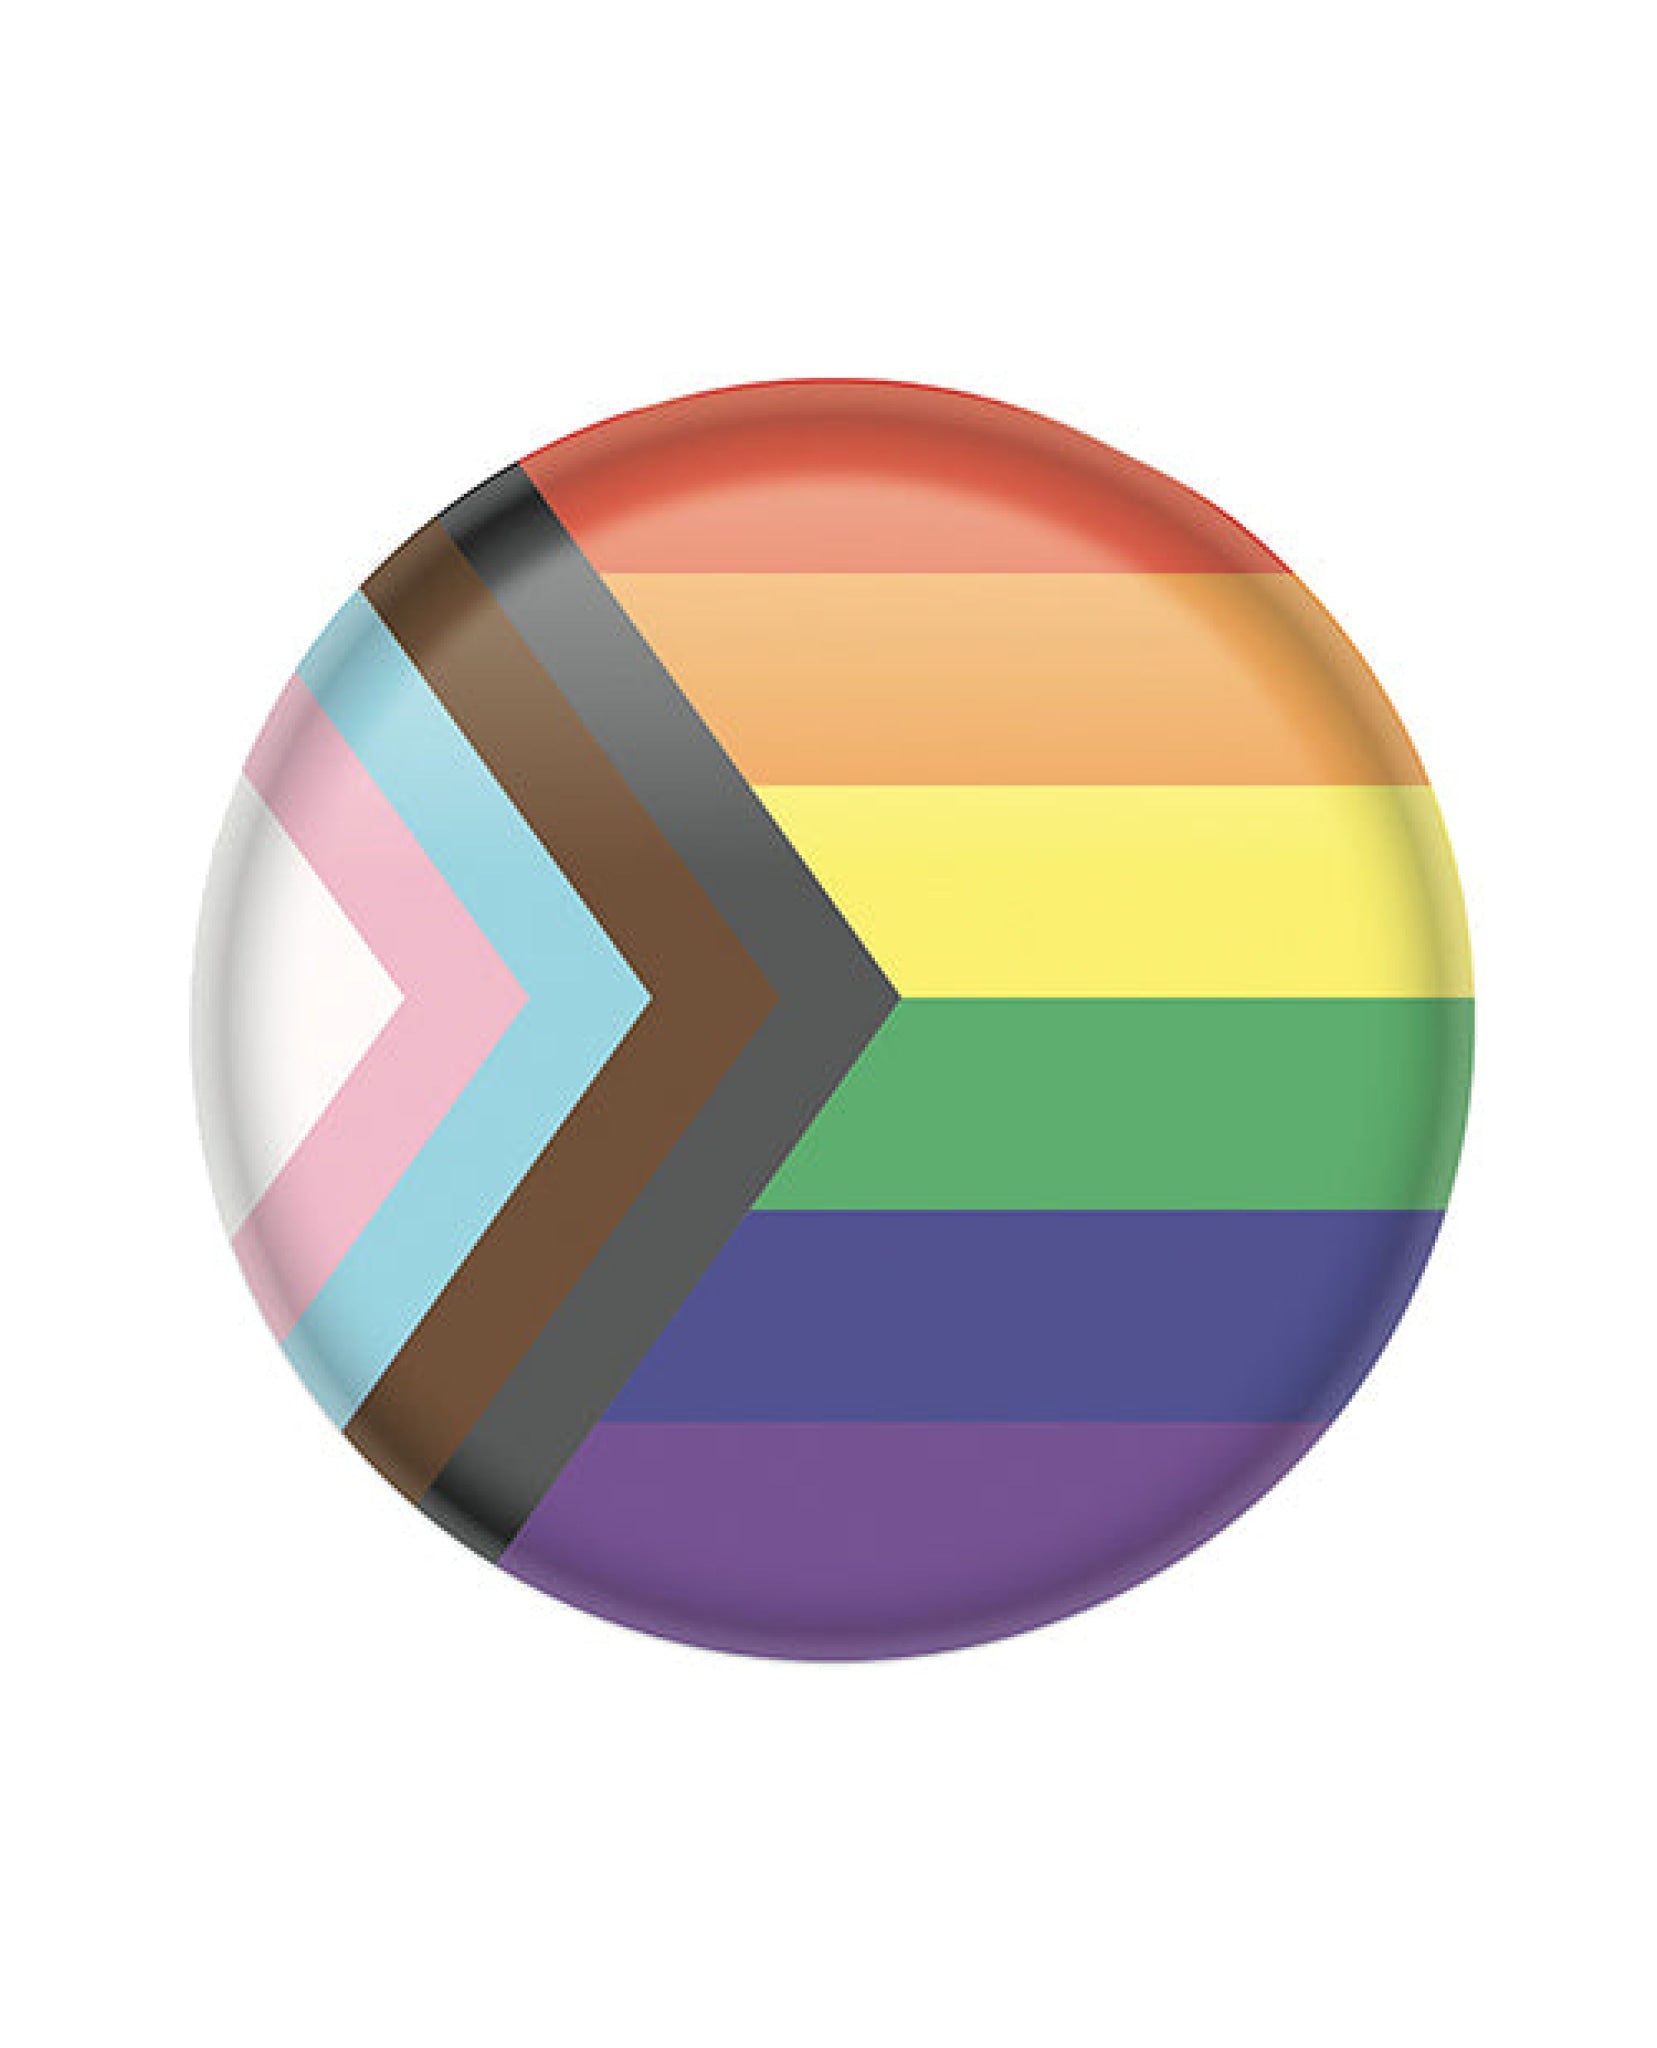 Pride Flag Button Beistle